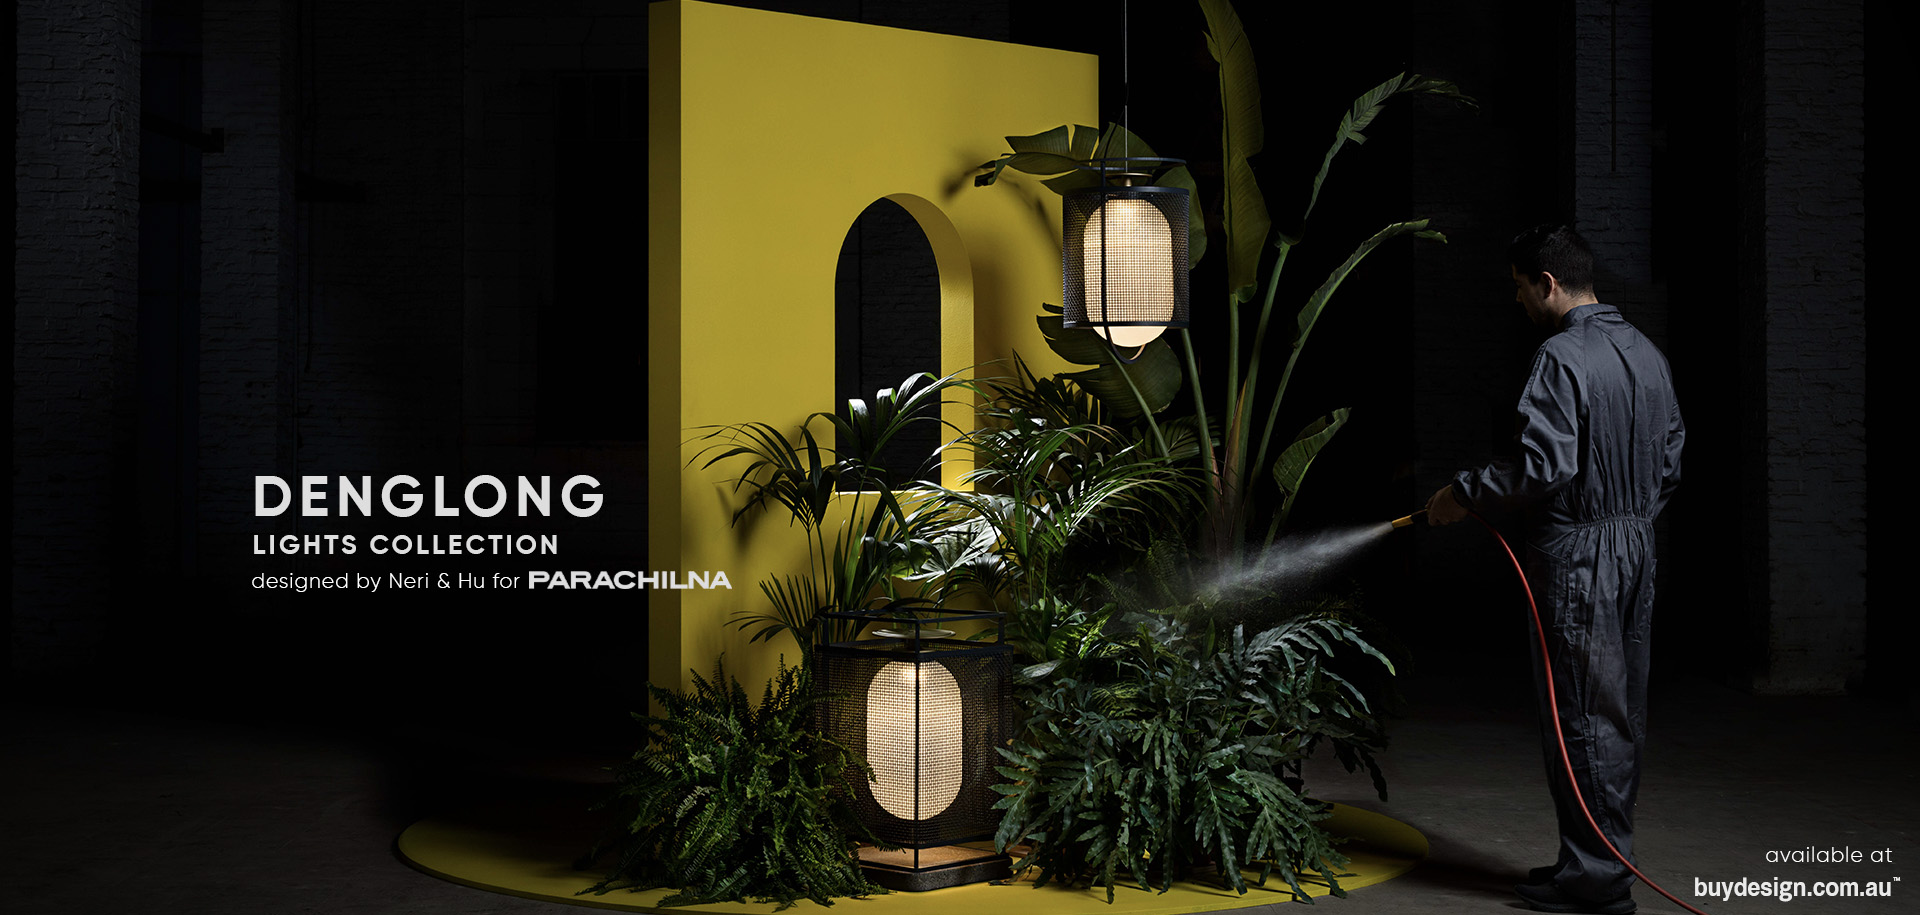 BuyDesign Parachilna Denglong Collection